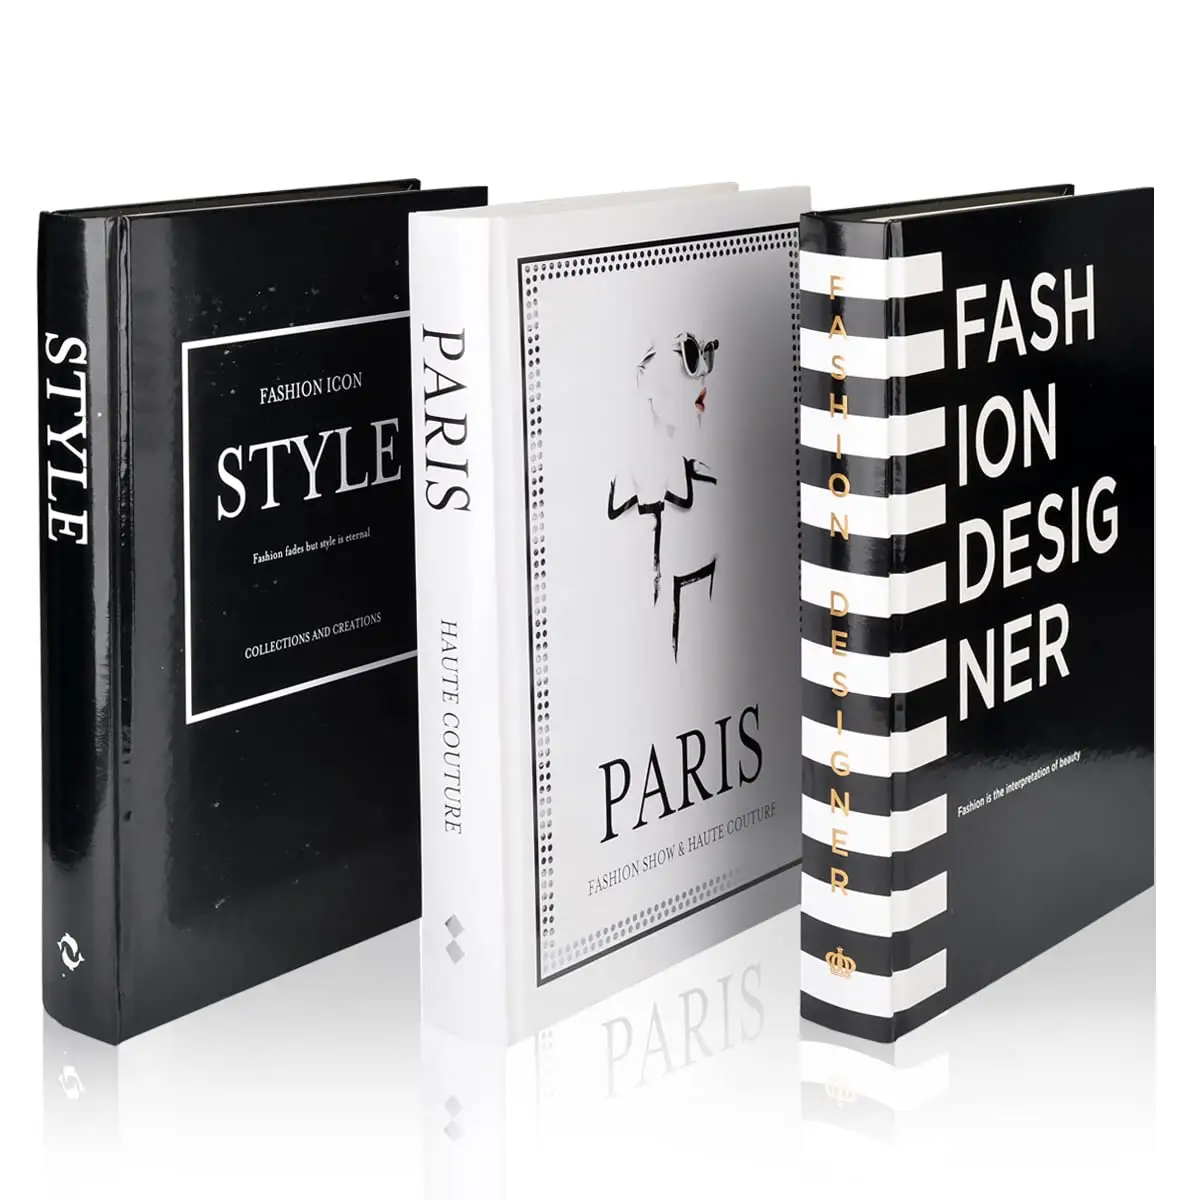 3 Stück Fashion Decorative Book Stack,Fashion Design Book Set, Wohnkultur Bücher für Couch tische Buch